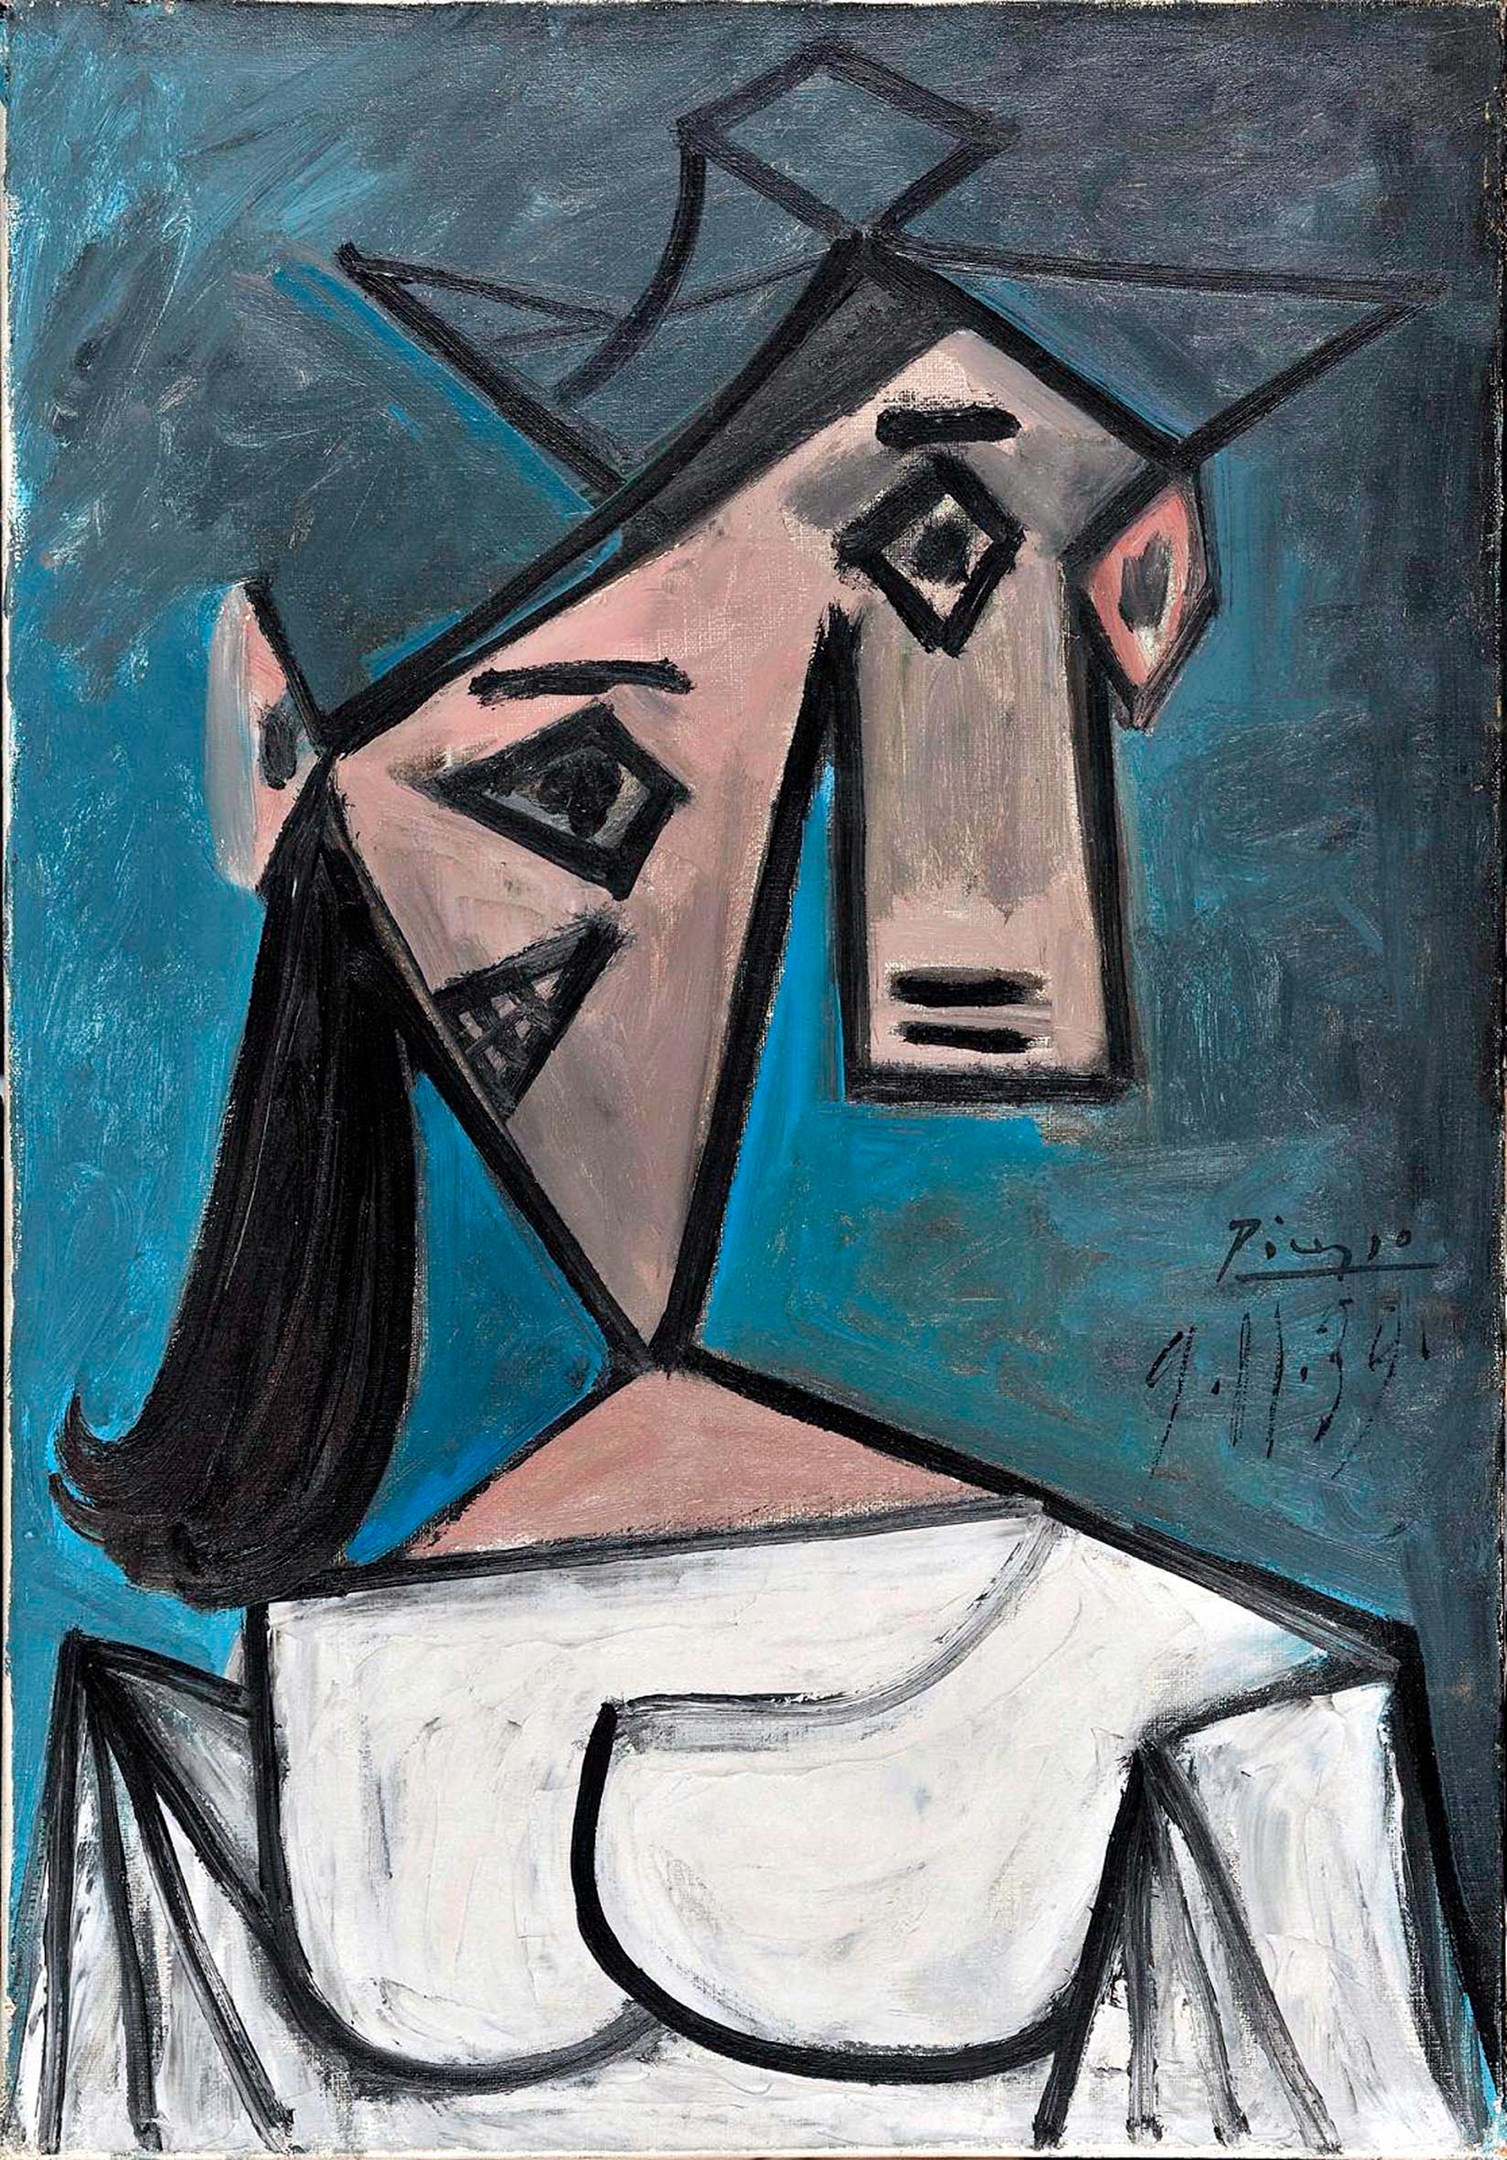 &laquo;Женская голова&raquo; (портрет музы Пикассо Доры Маар), Пабло Пикассо



